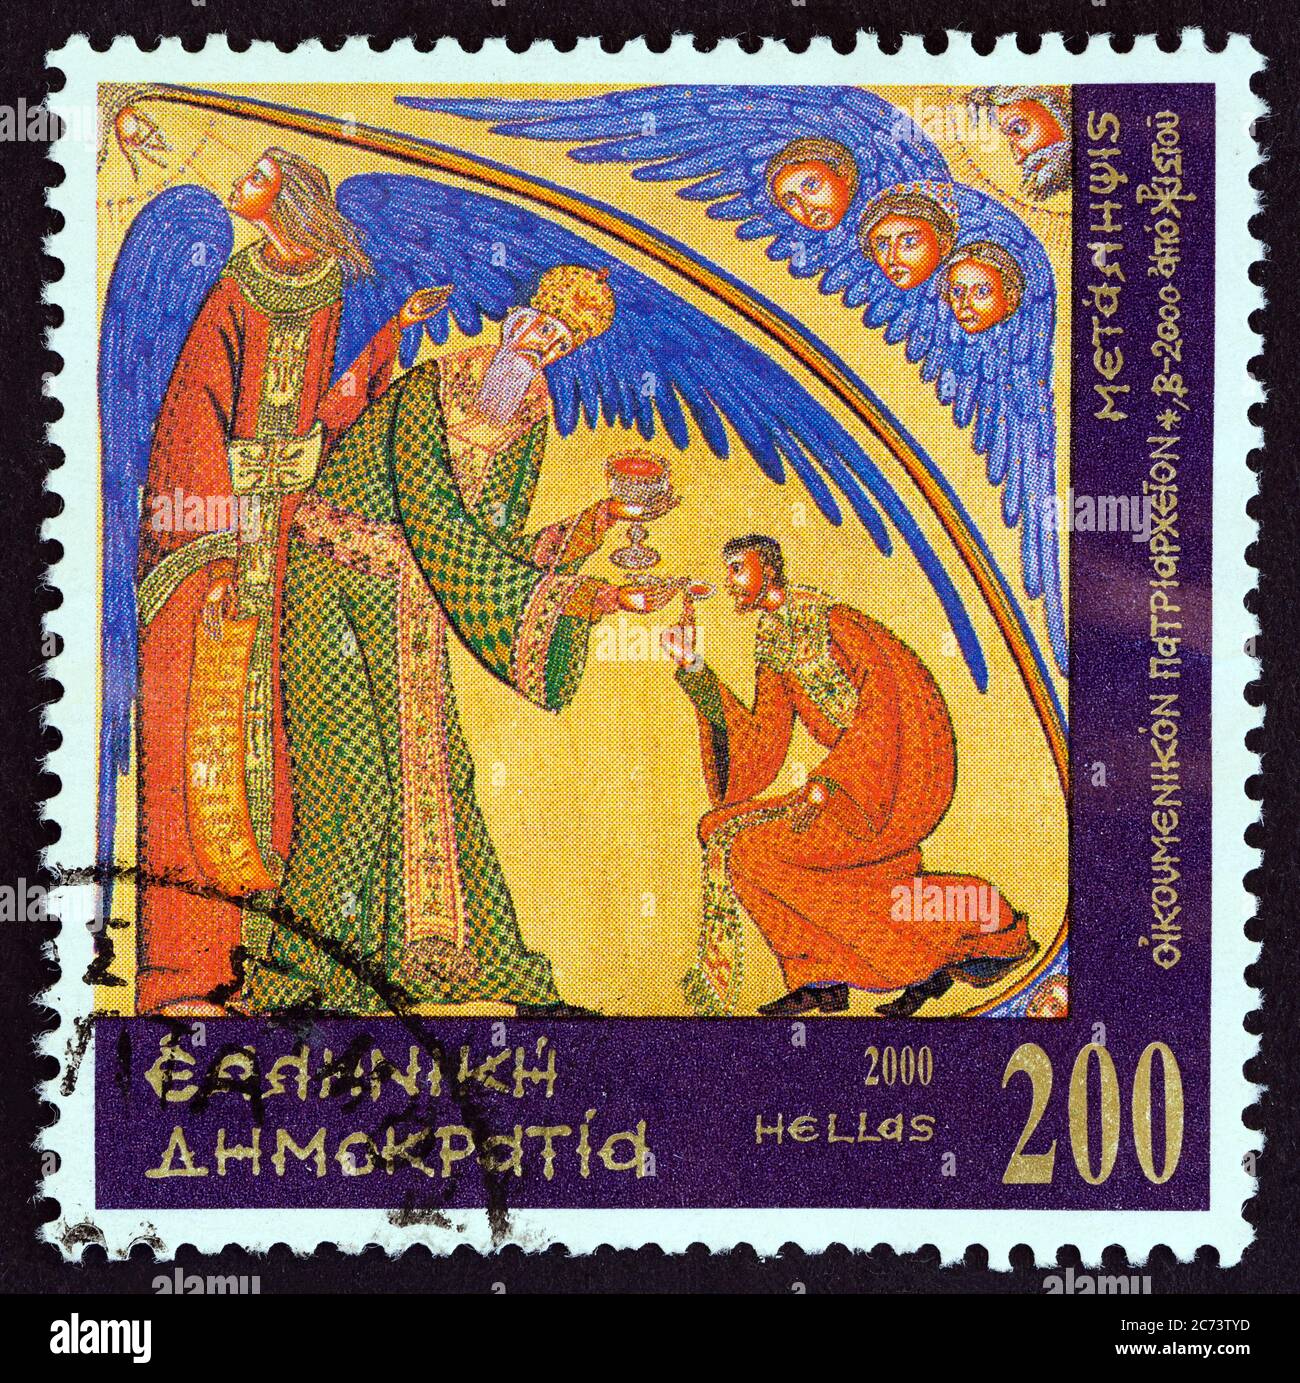 GRIECHENLAND - UM 2000: Eine in Griechenland gedruckte Briefmarke aus dem '2000. Jahrestag der Geburt Jesu Christi' zeigt die Kommunion, um 2000. Stockfoto